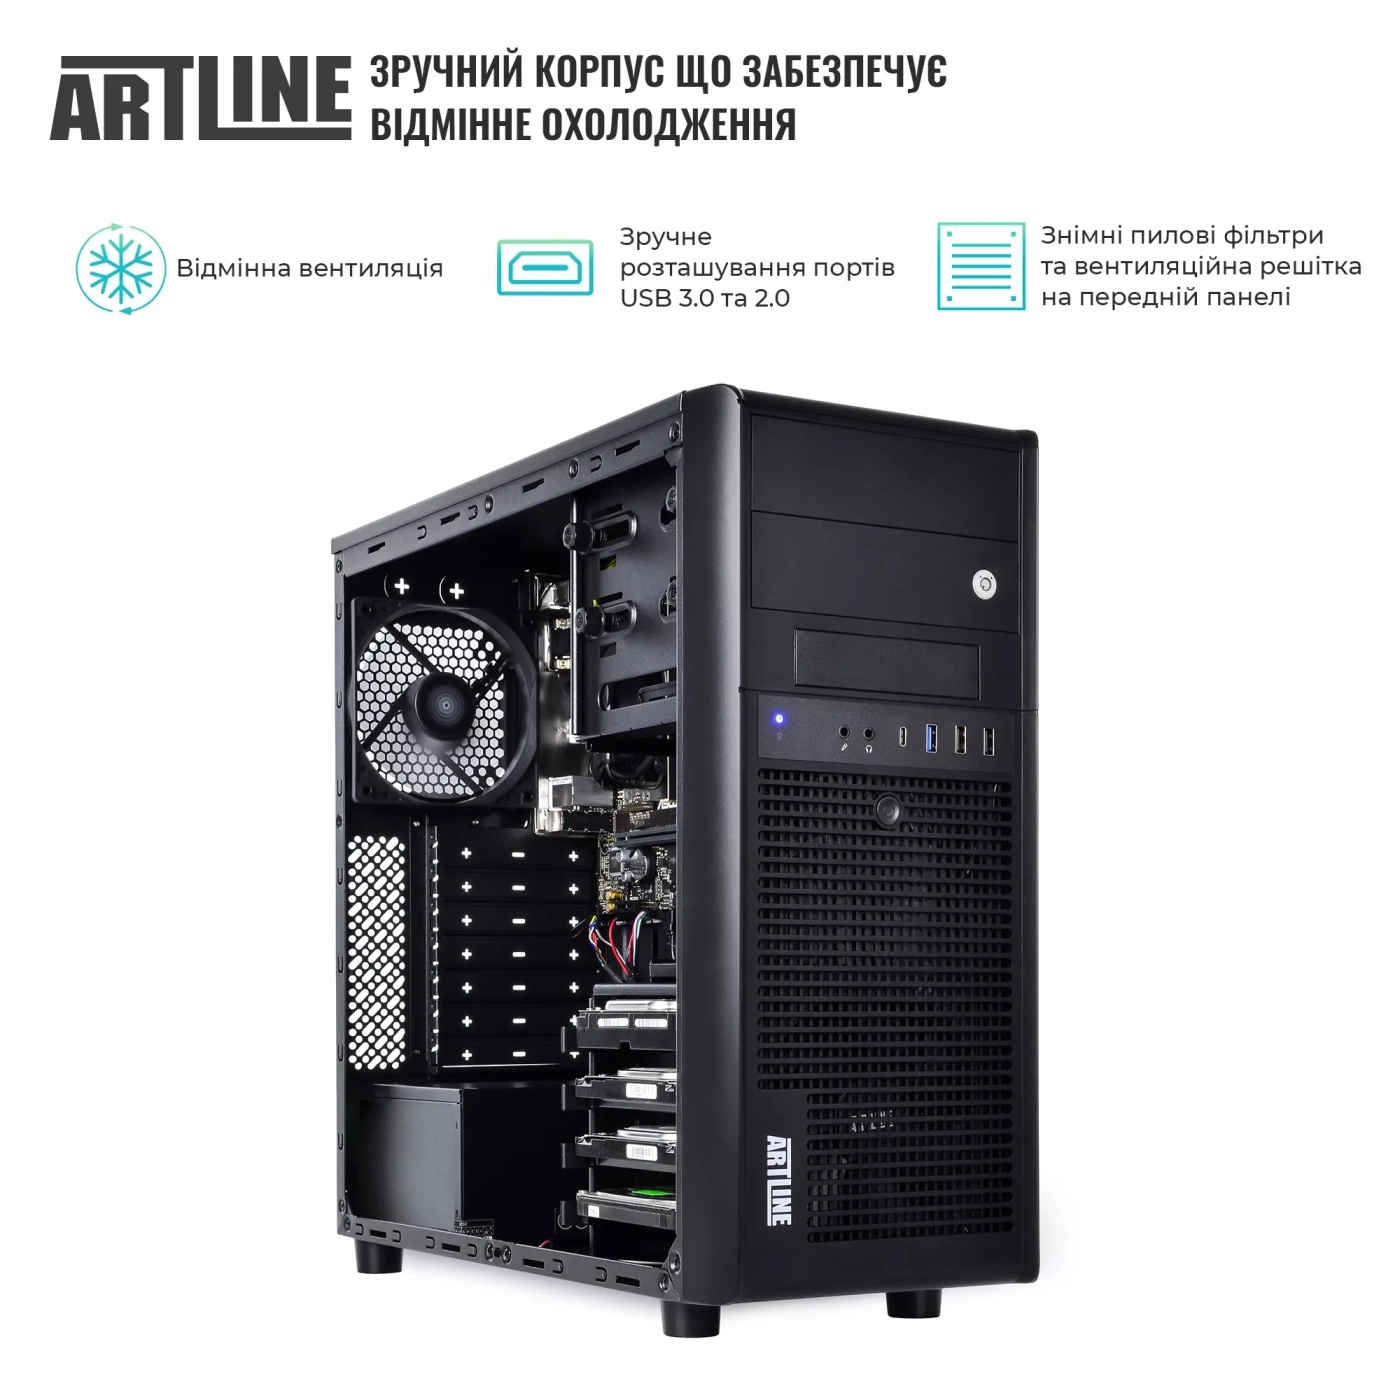 Купить Сервер ARTLINE Business T36 (T36v38) - фото 3